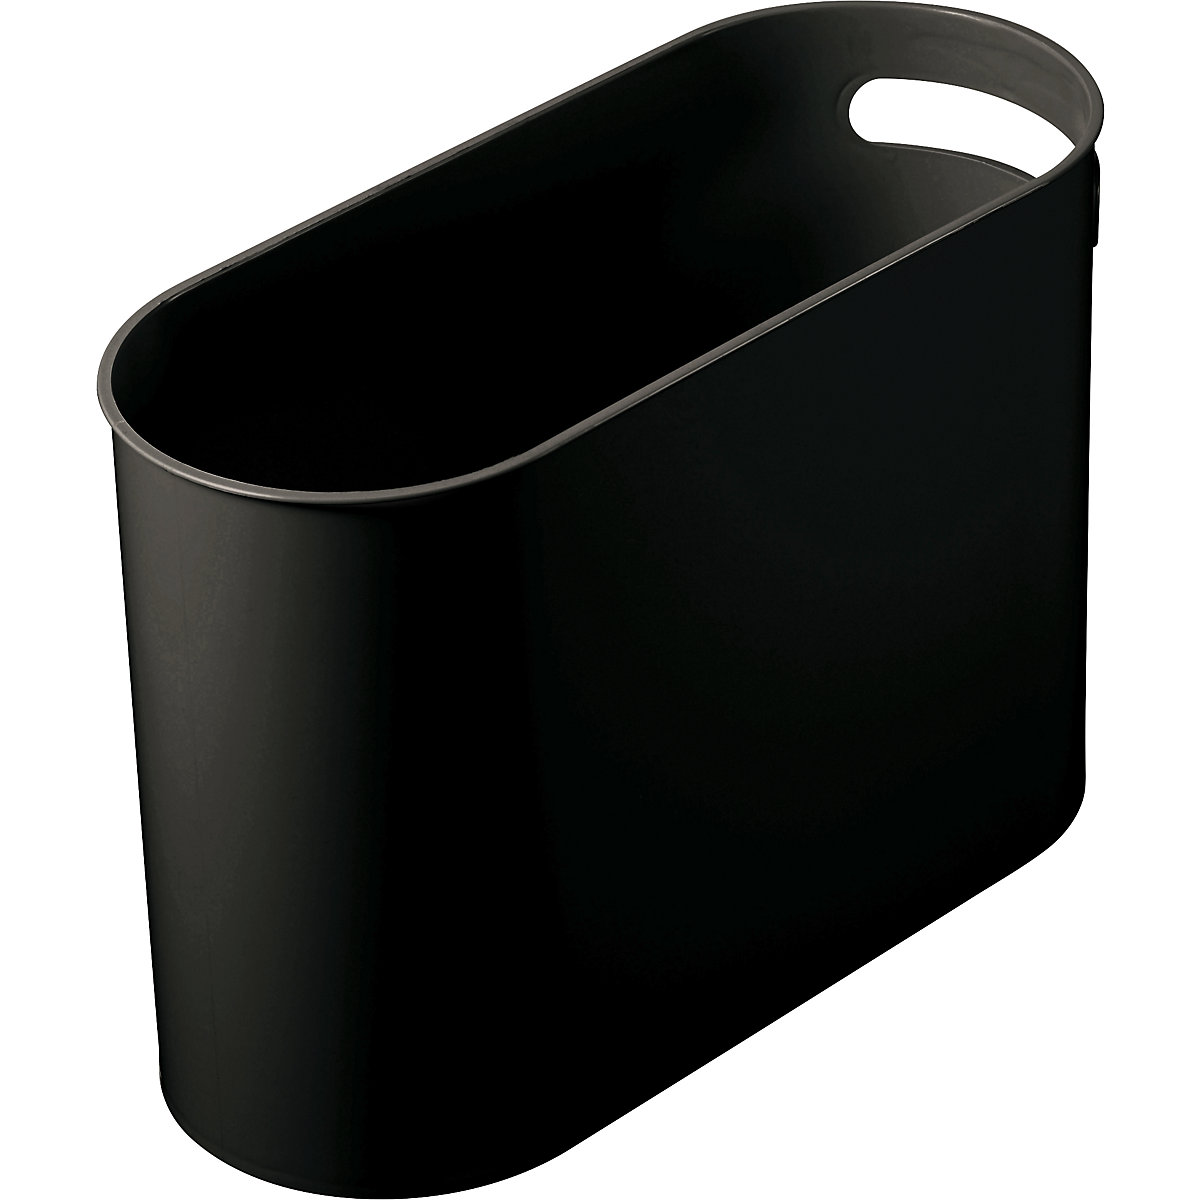 Oval waste paper bin – helit